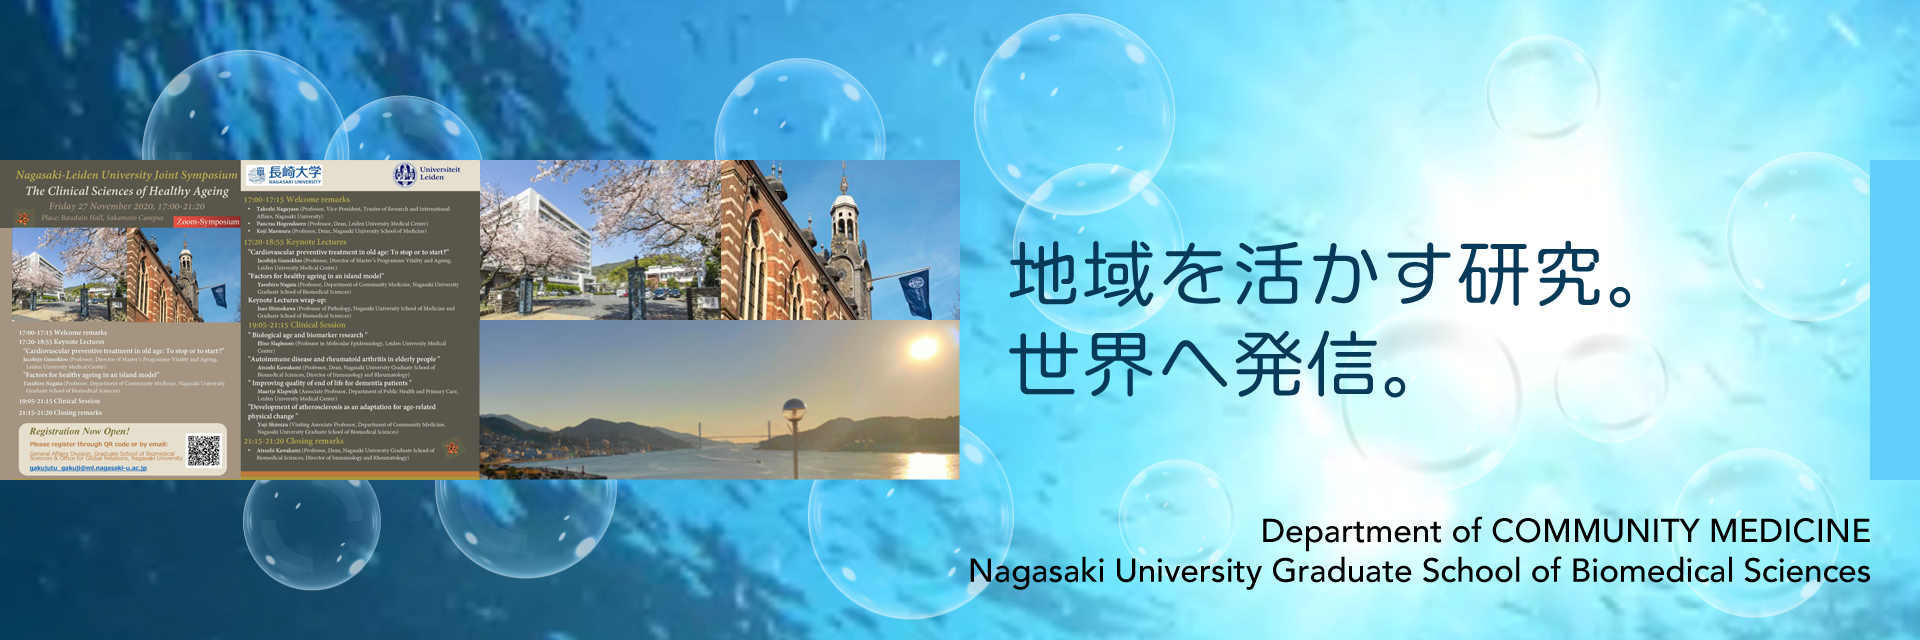 地域を活かす研究。世界へ発信。：Department of Community Medicine, Nagasaki University Graduate School of Biomedical Sciences